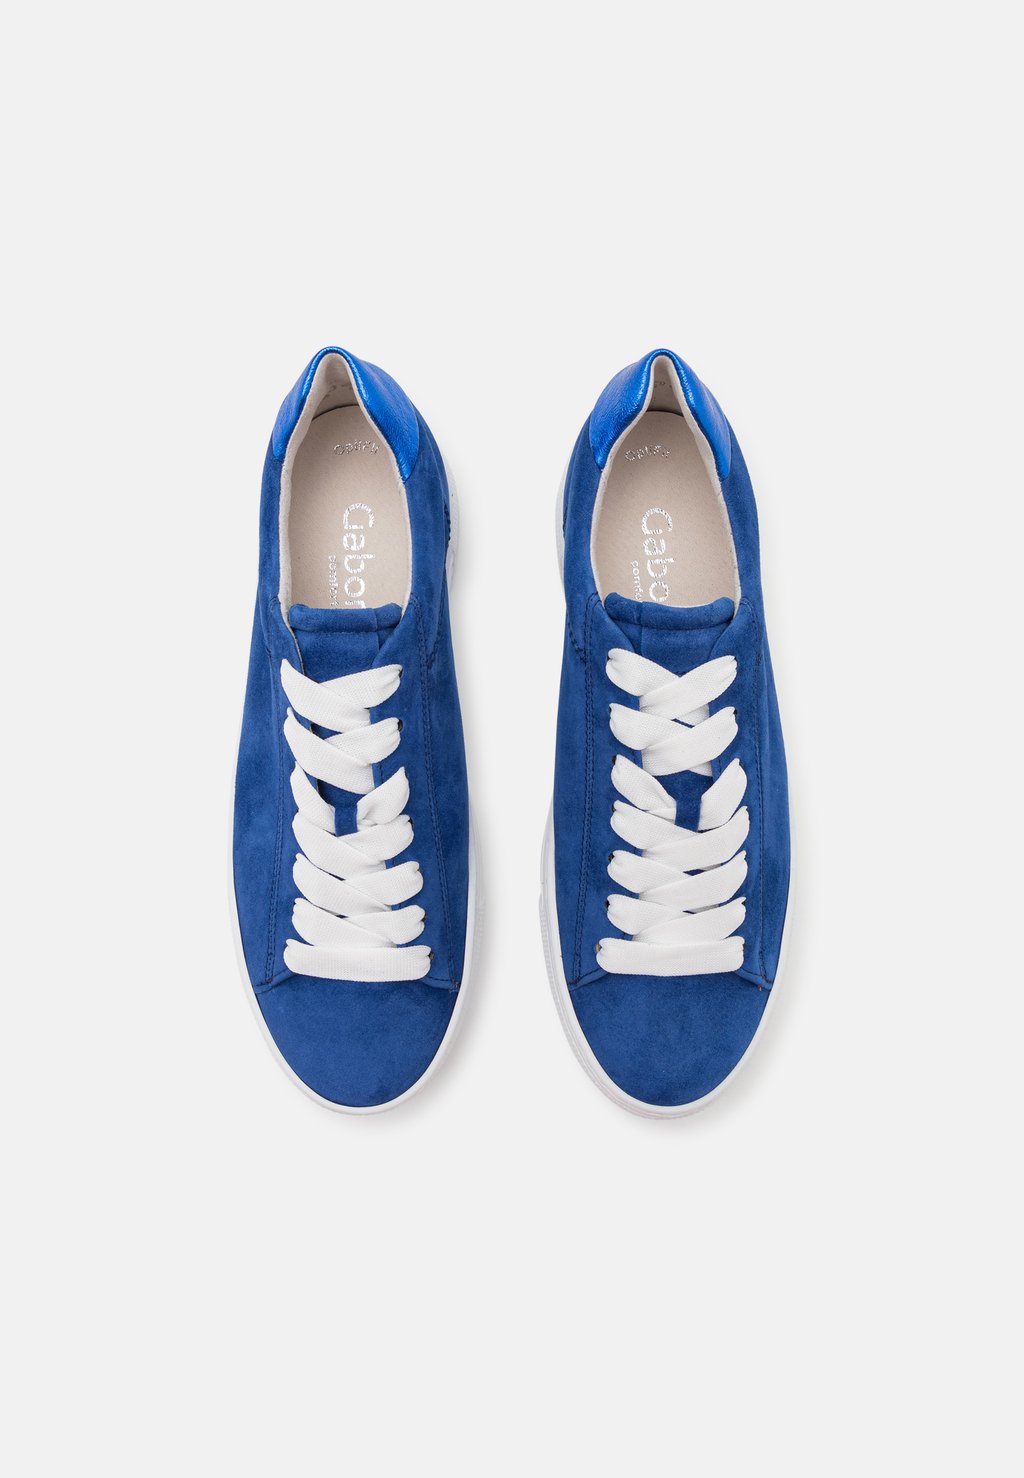 Низкие кроссовки Gabor Comfort, темно-синие низкие кроссовки gabor comfort молочный